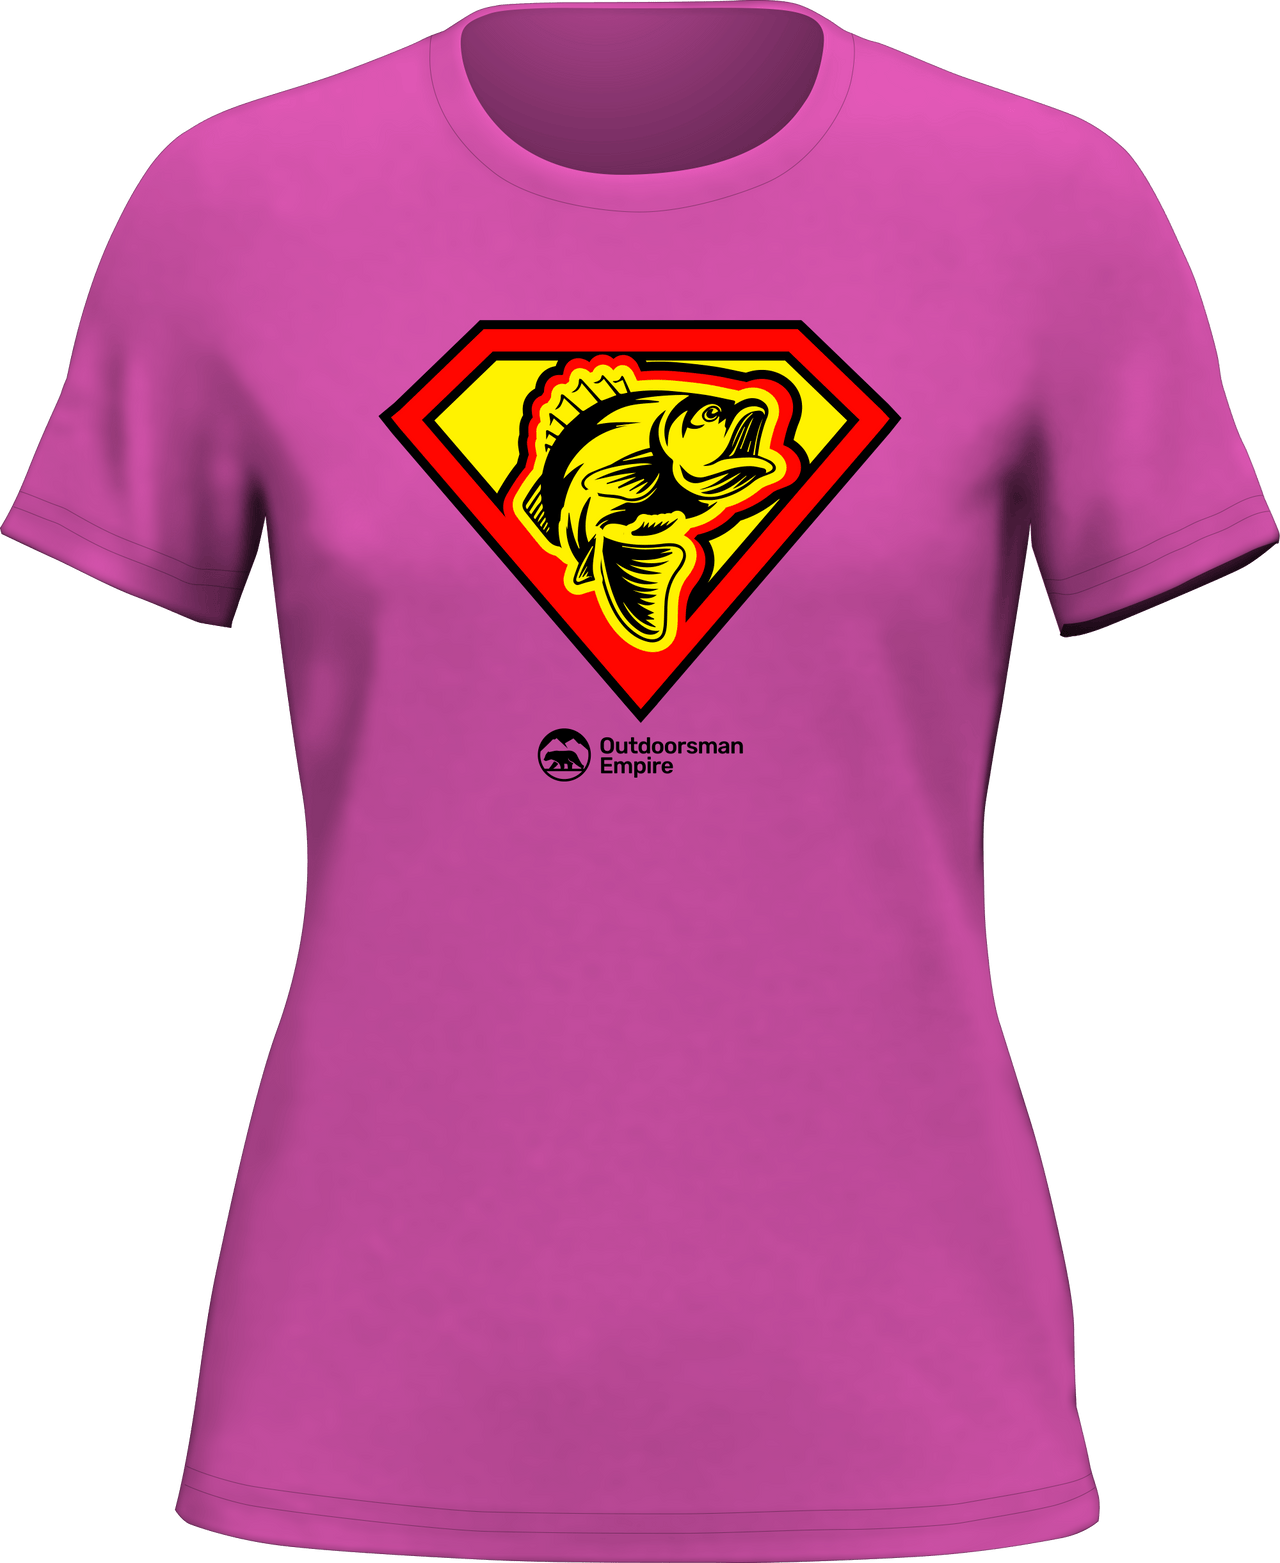 Super Fishing T-Shirt for Women